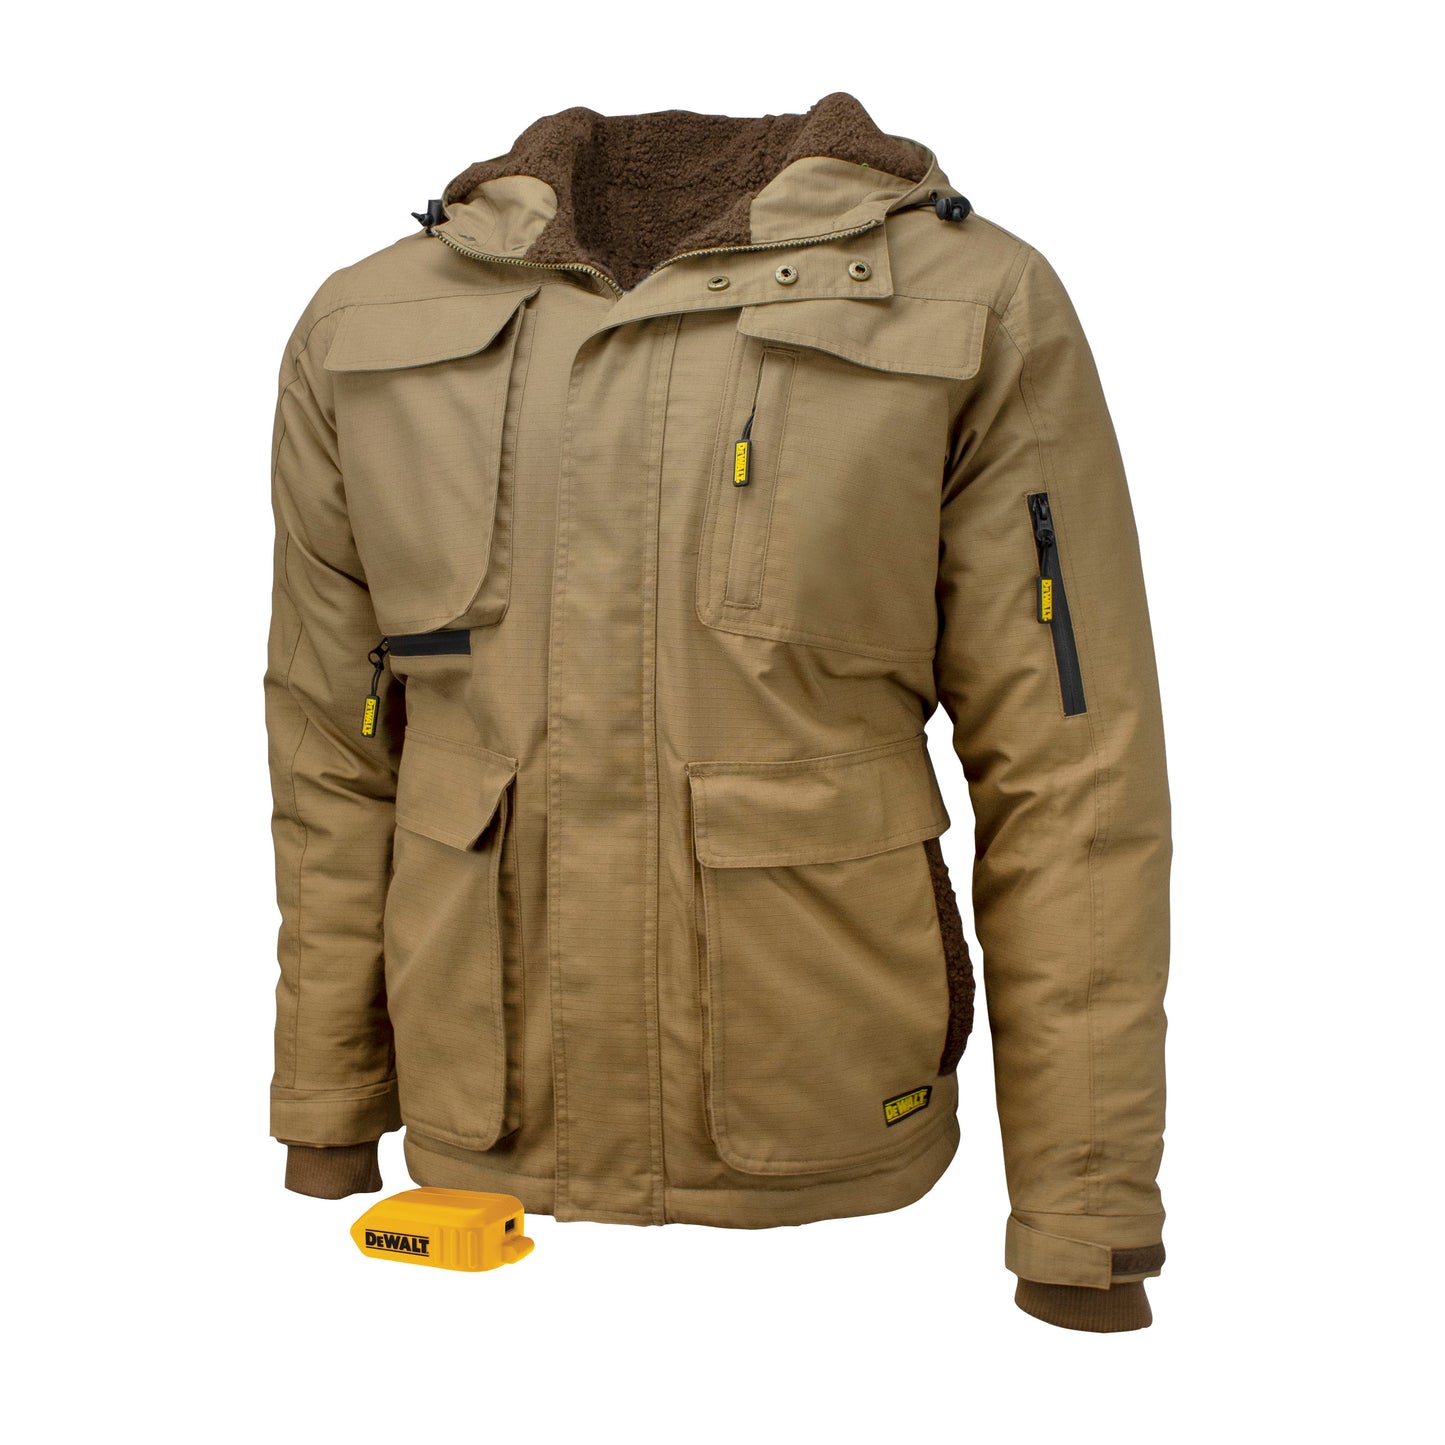 DEWALT® Men's Heavy Duty Ripstop Heated Jacket without Battery